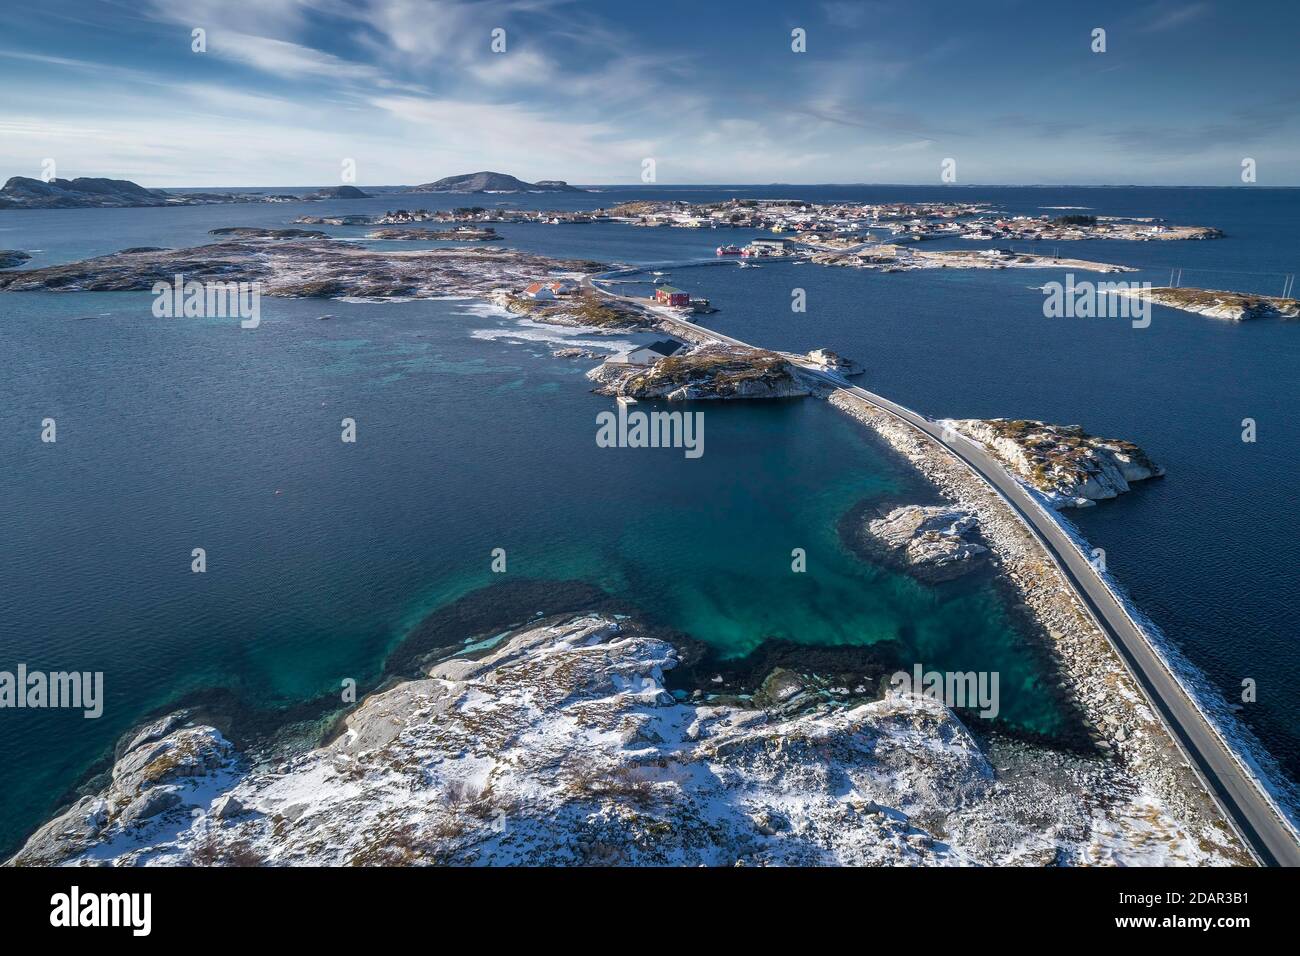 Vue aérienne, route de campagne reliant de petites îles hivernales dans la mer, Heroy, Nordland, Norvège Banque D'Images